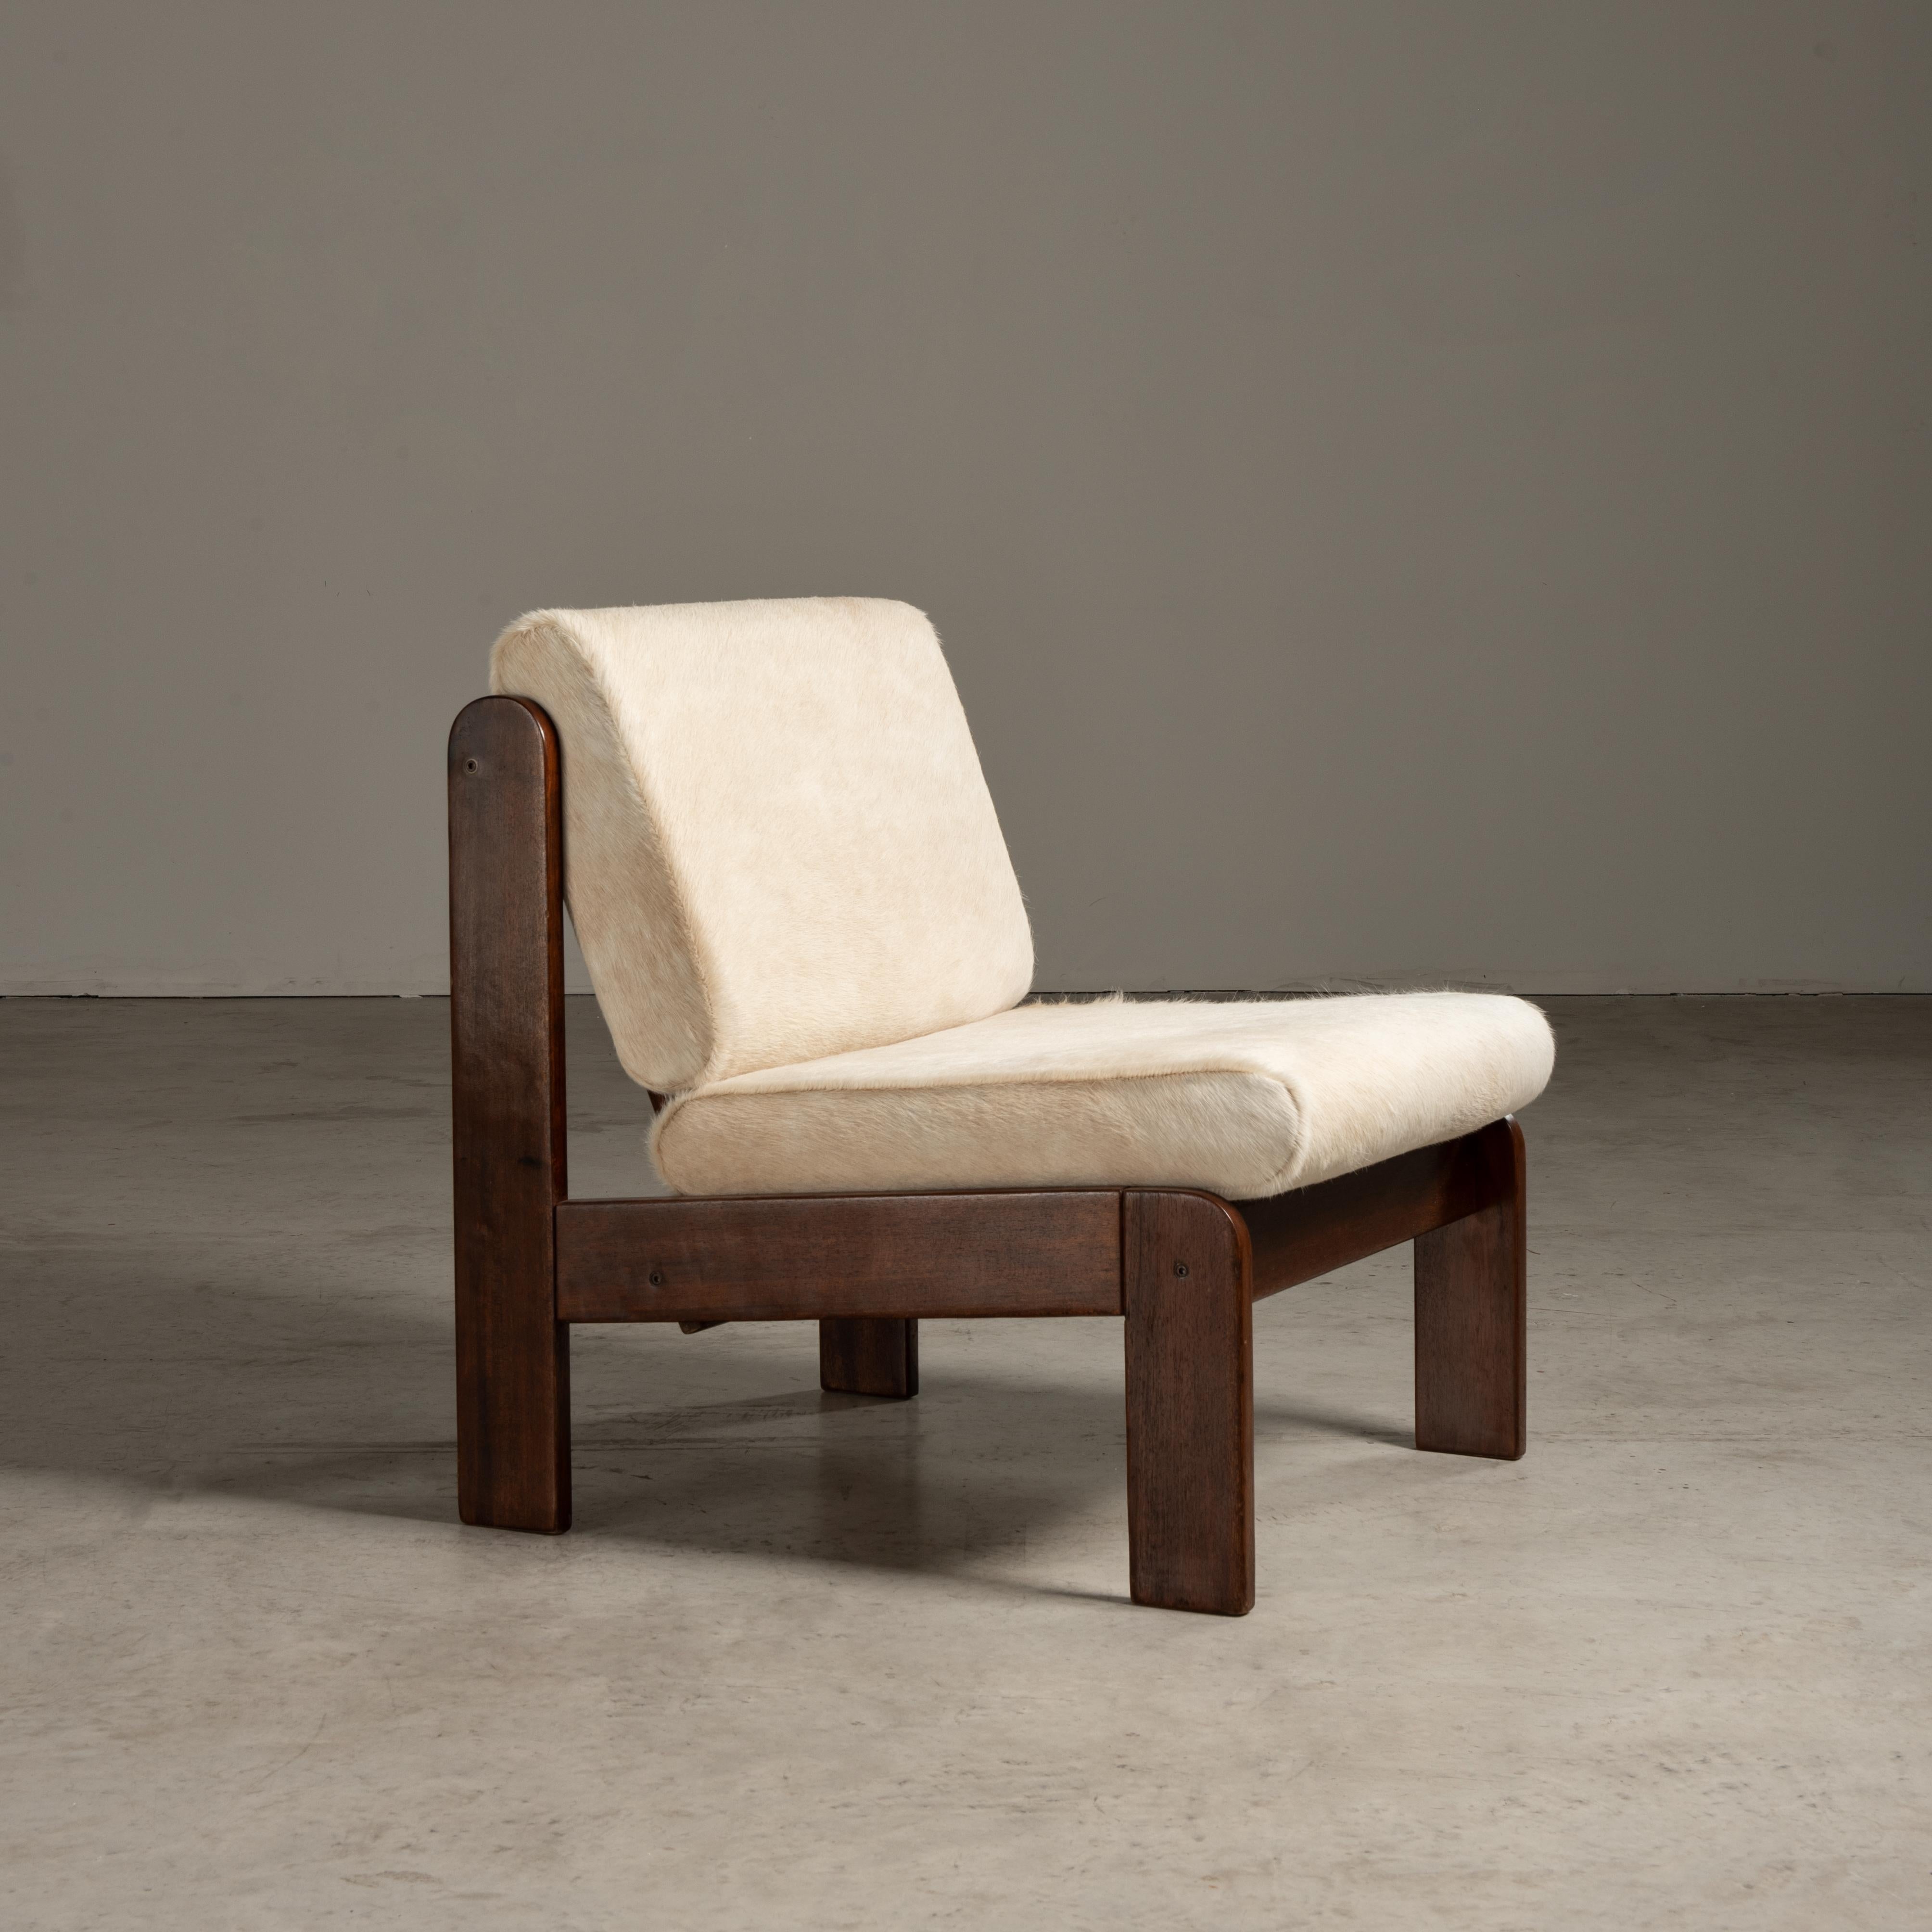 Fruit de l'esprit novateur de Geraldo de Barros, cette chaise longue témoigne du mouvement de design moderne du milieu du siècle qui a balayé le Brésil, mariant les principes du modernisme avec le flair distinct de l'esthétique brésilienne. La